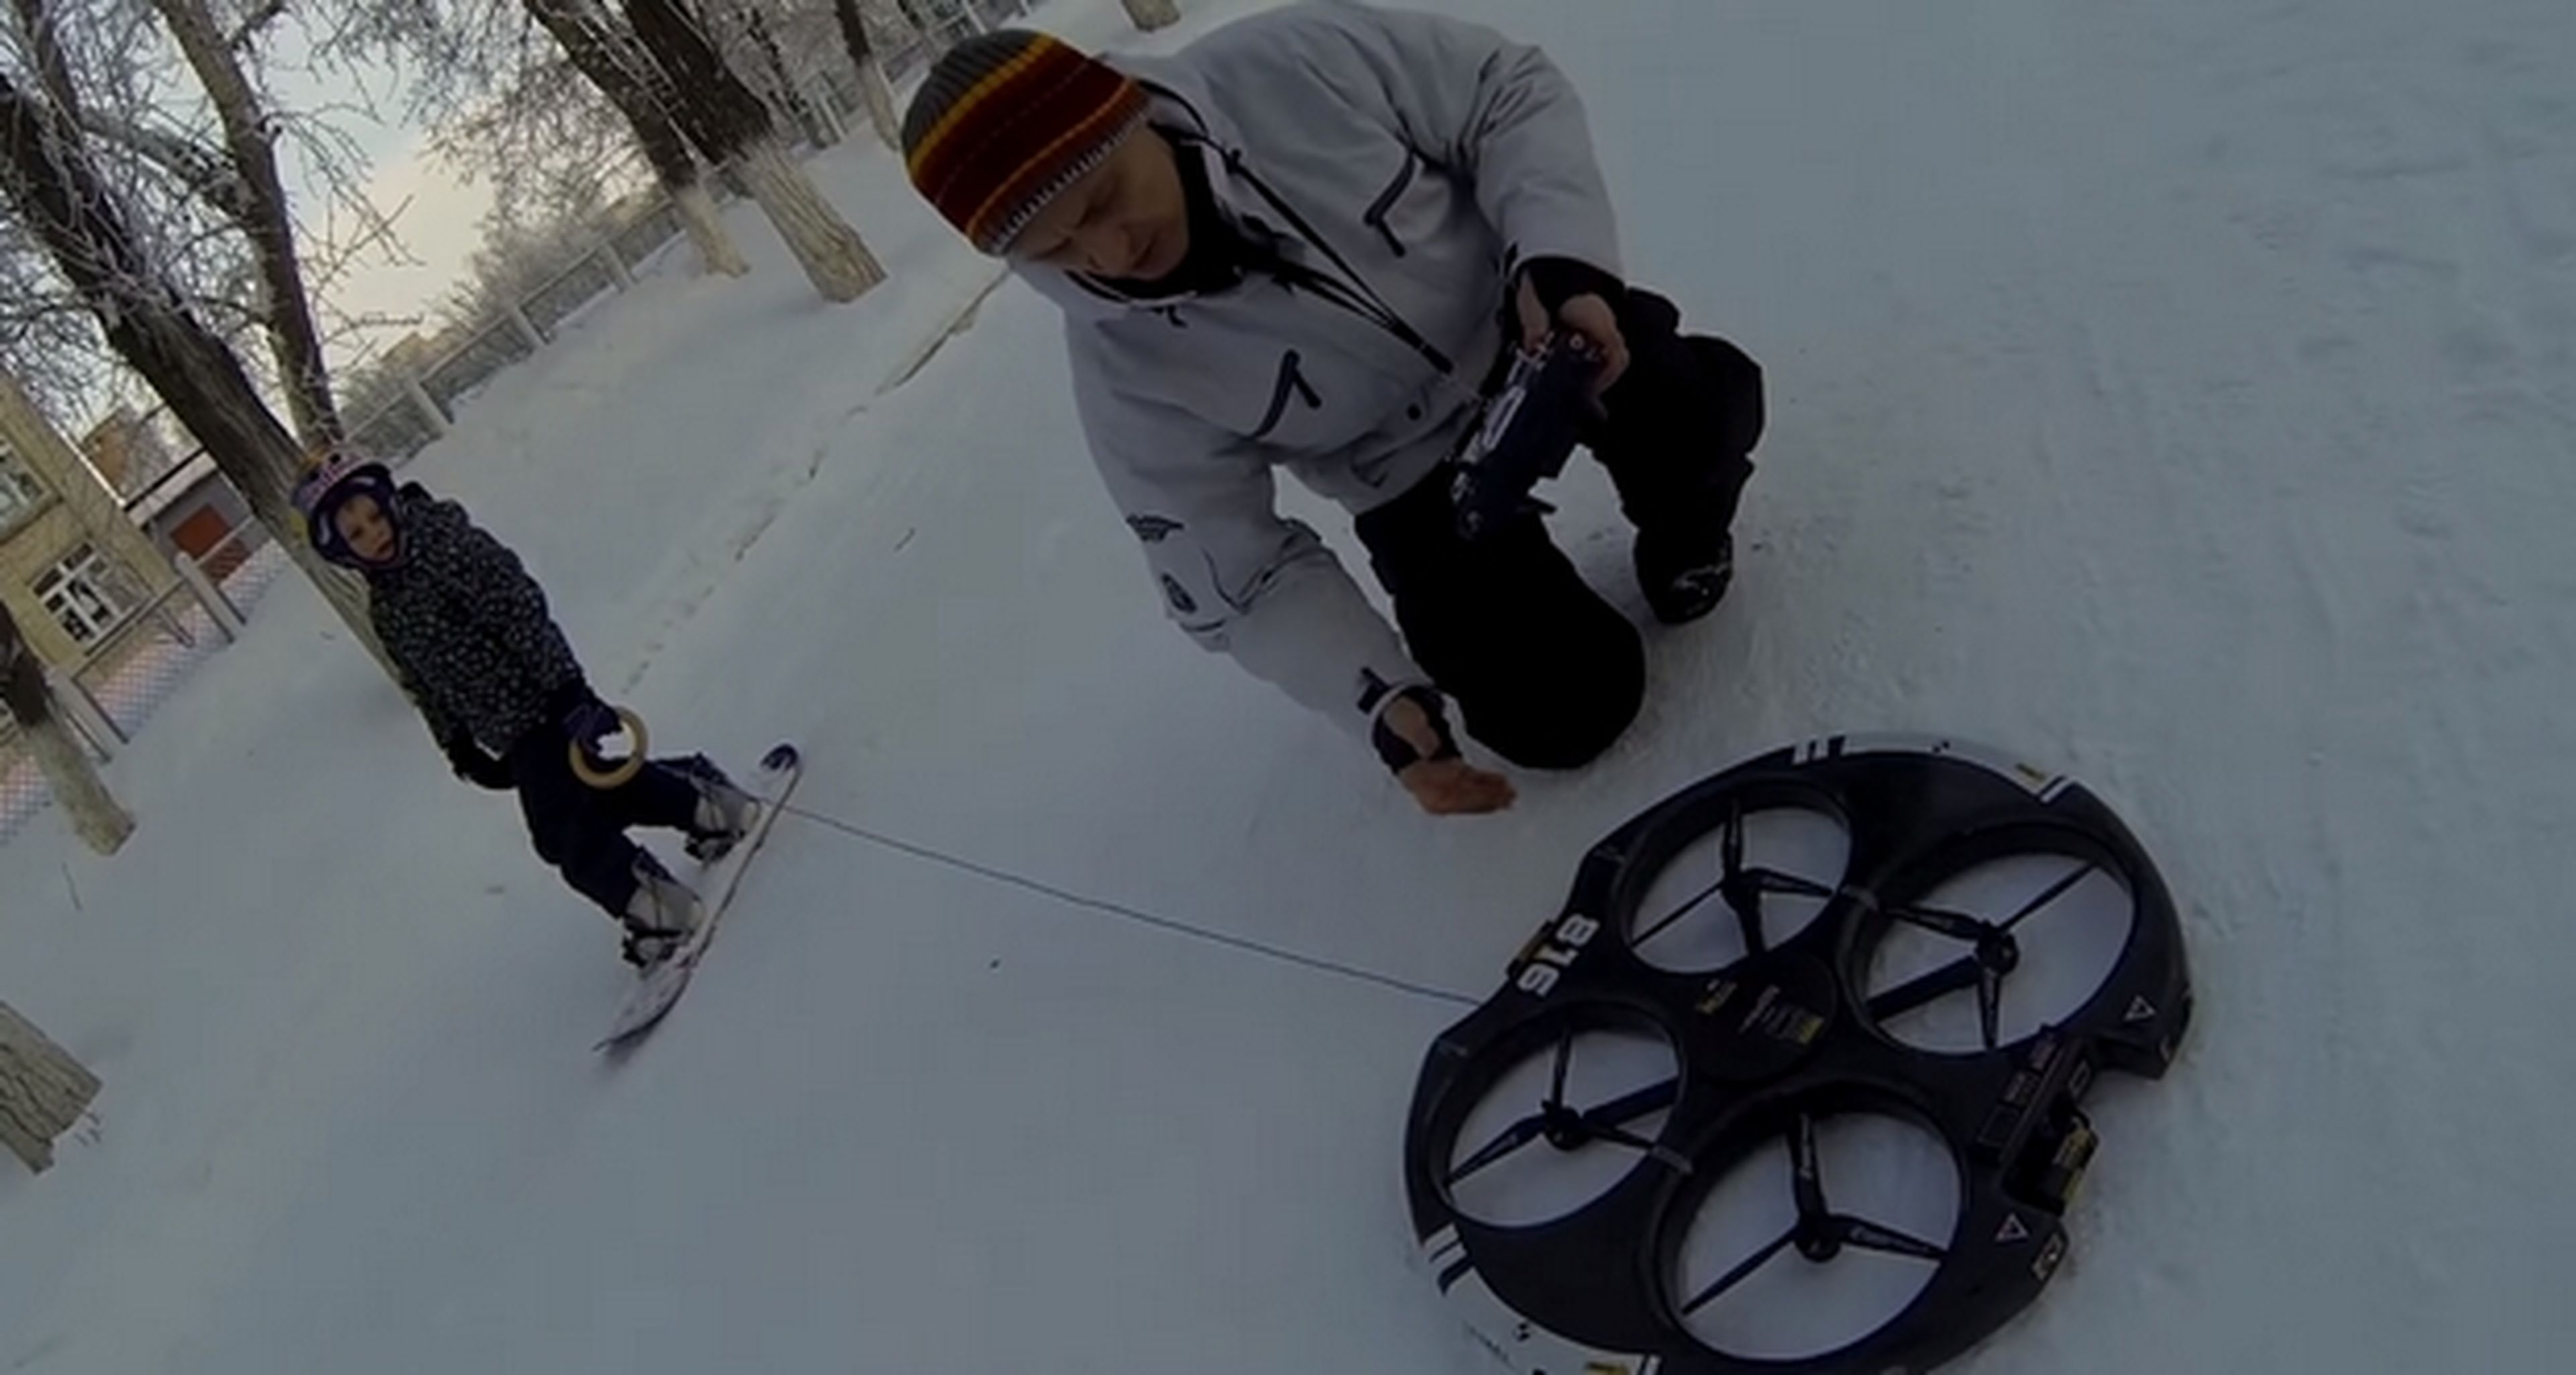 Llega el Droneboarding, tablas de snowboard impulsadas por un drone